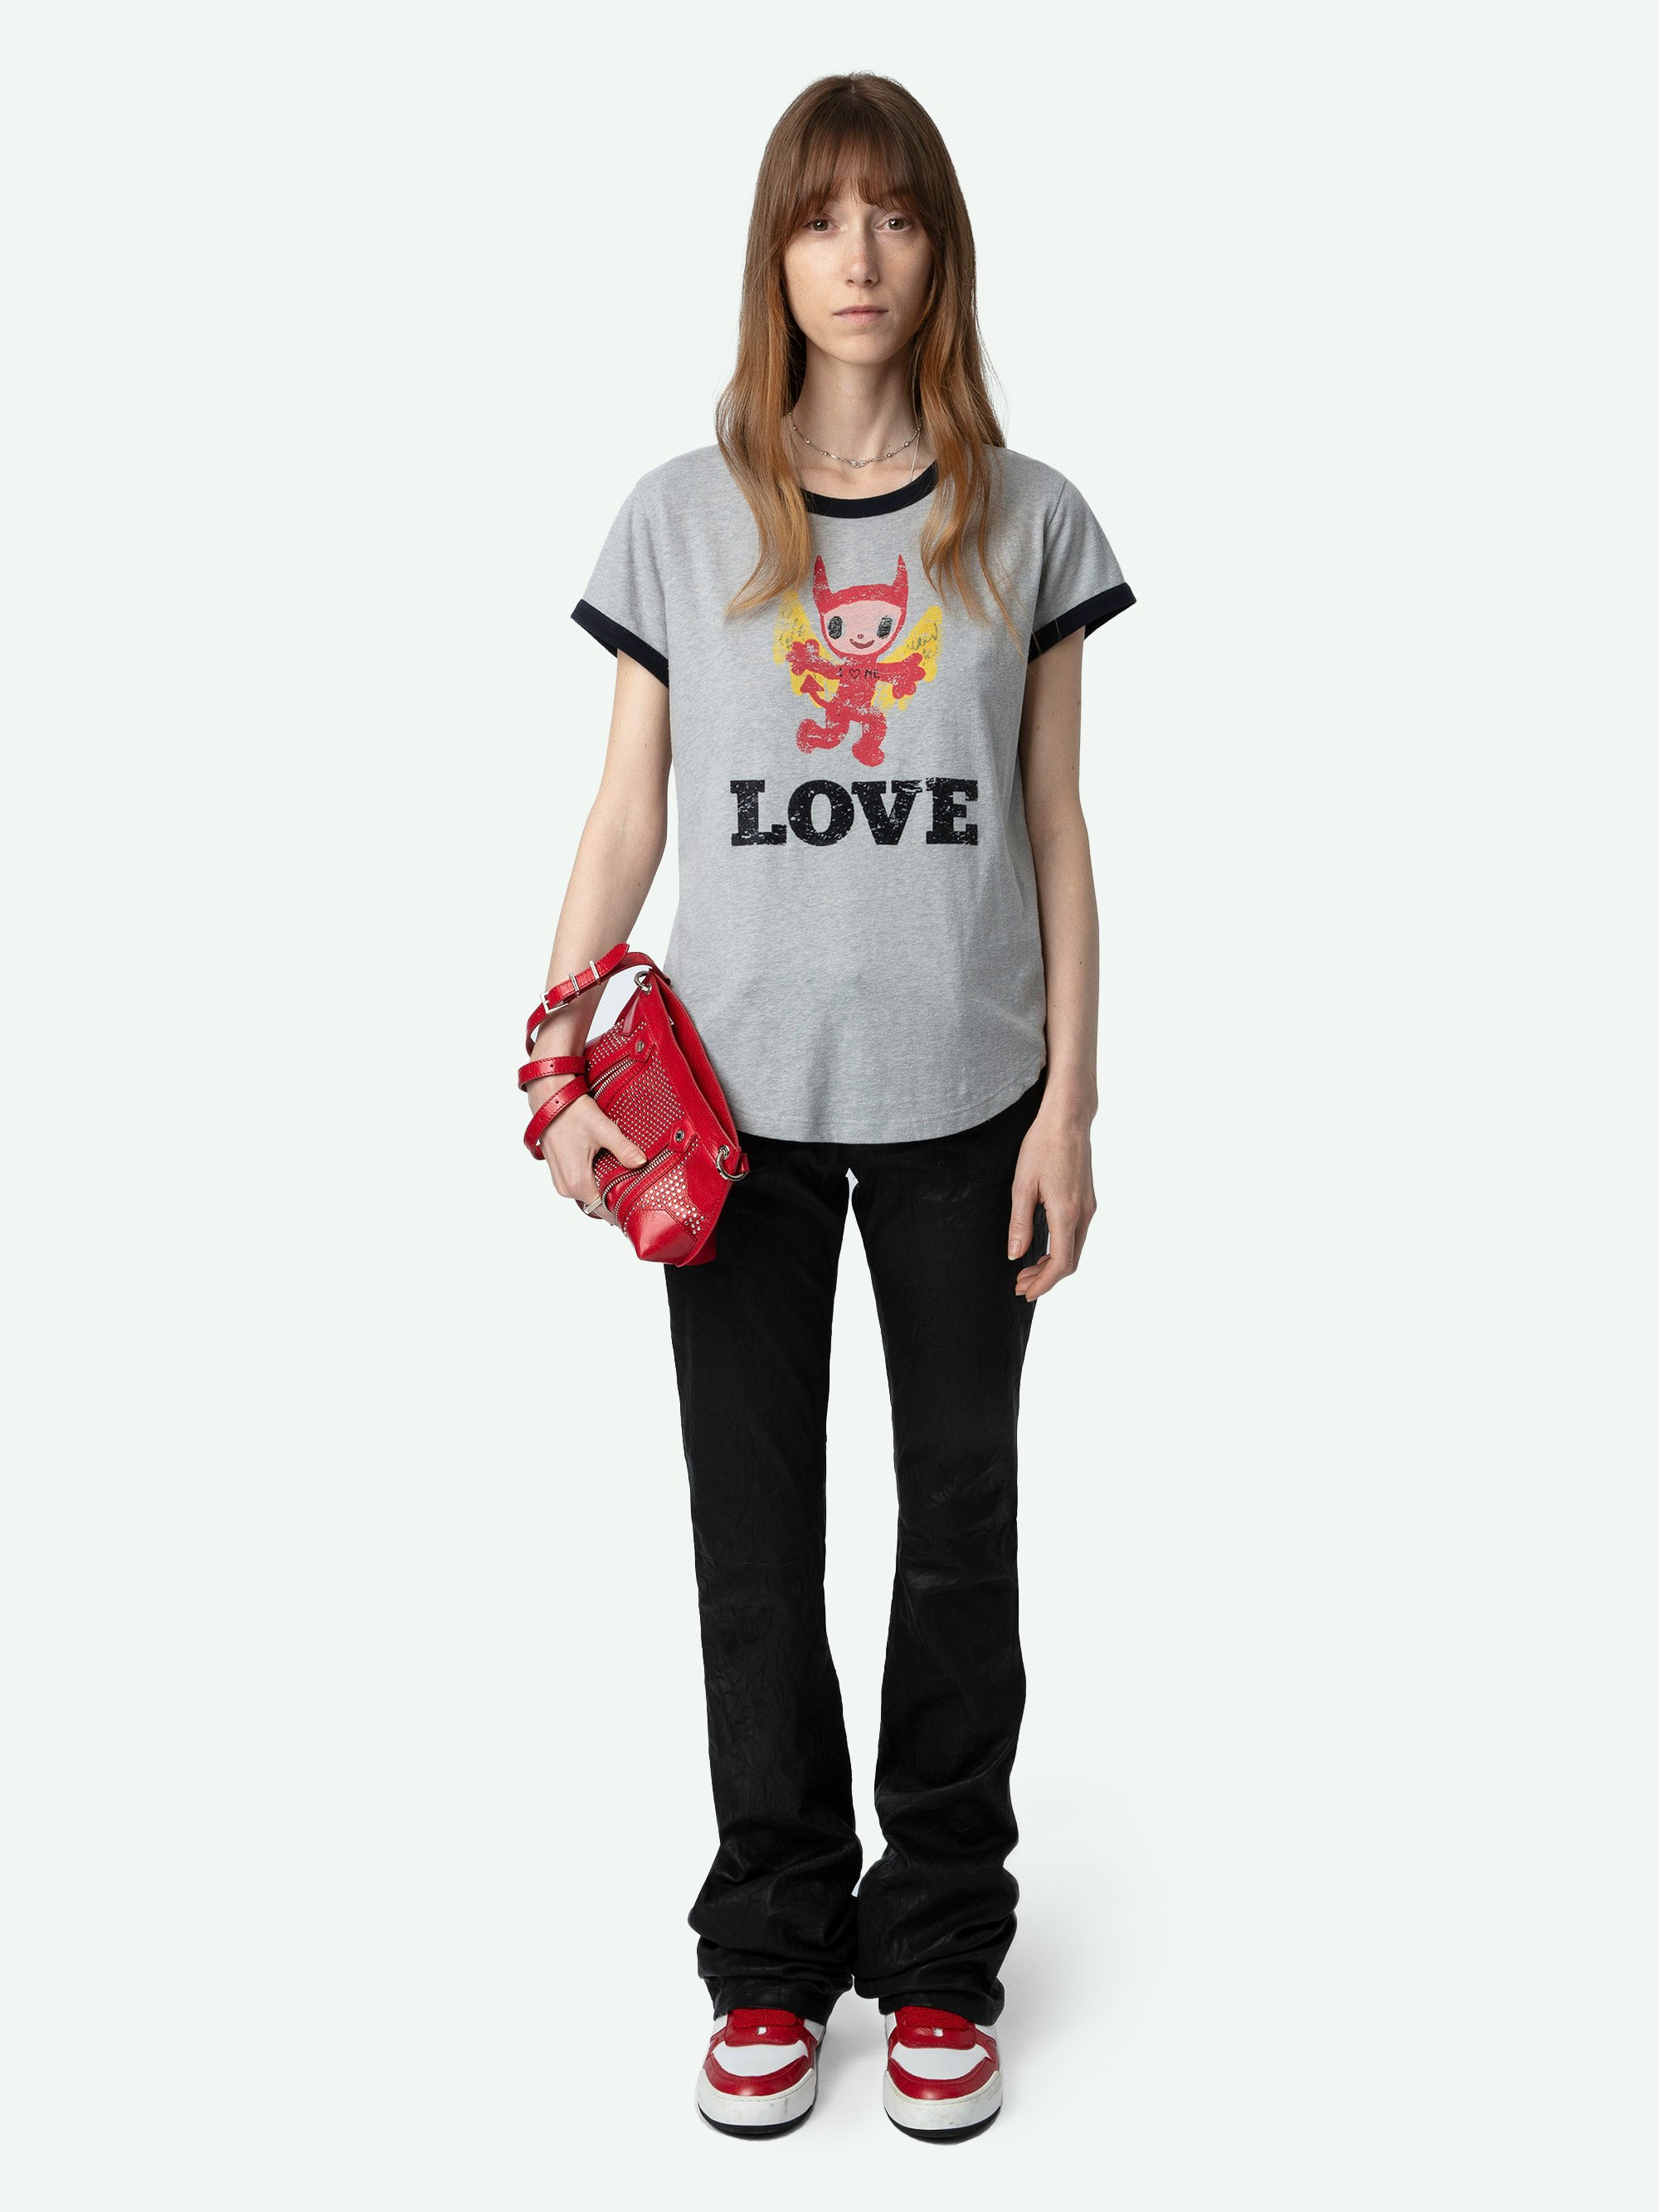 Camiseta Woop Devil - Camiseta de color gris jaspeado de manga corta, con bordes en contraste y estampado Devil Love en la parte delantera.